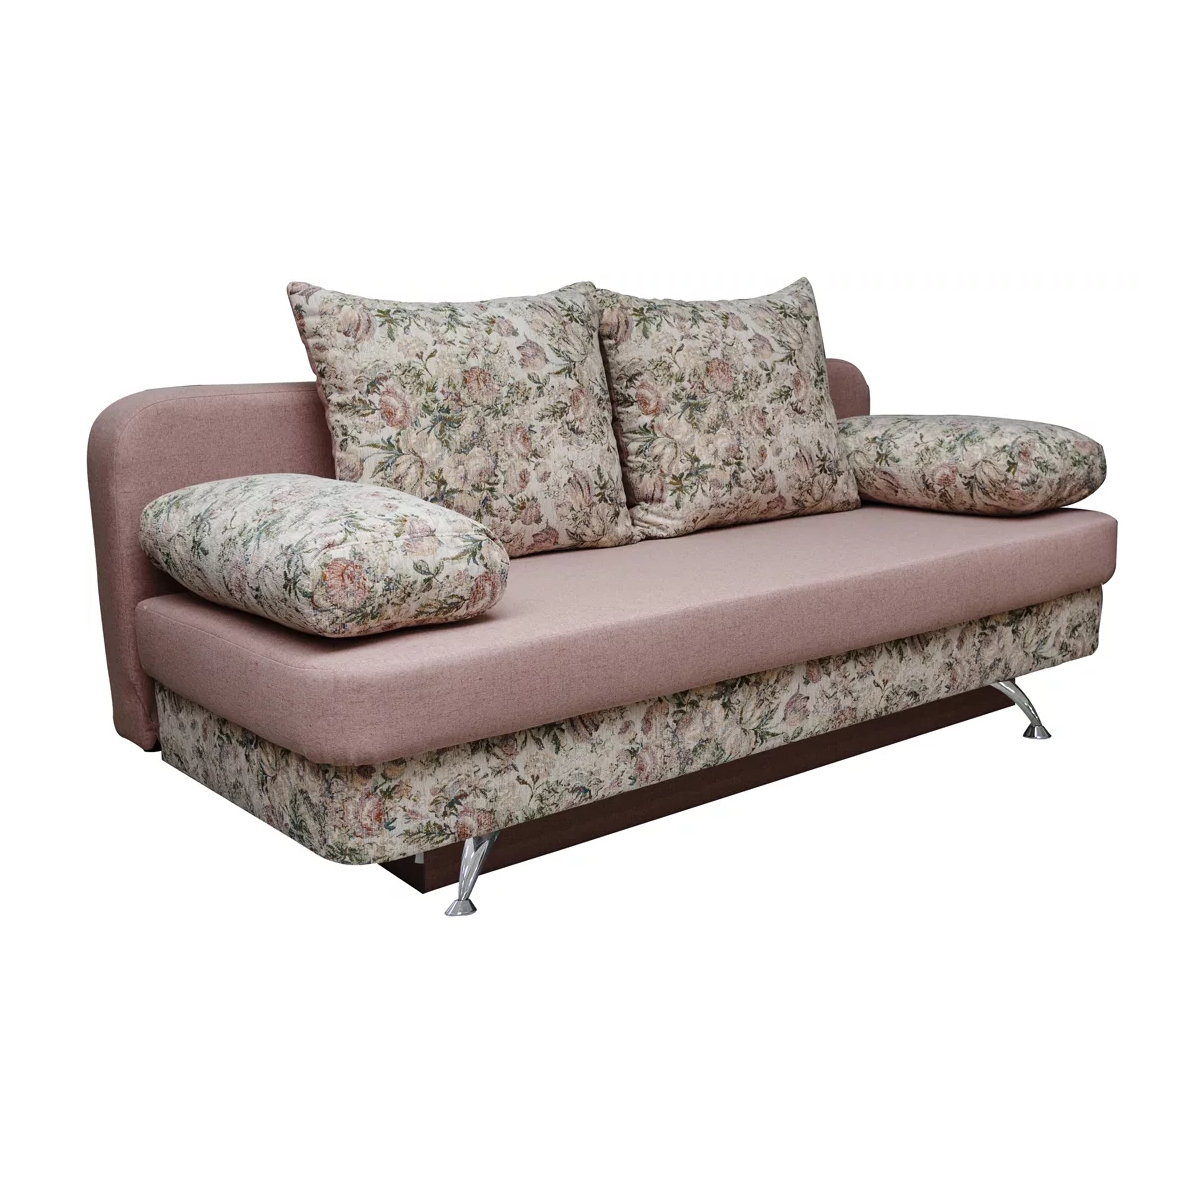 Современное решение для дома: диван - тахта